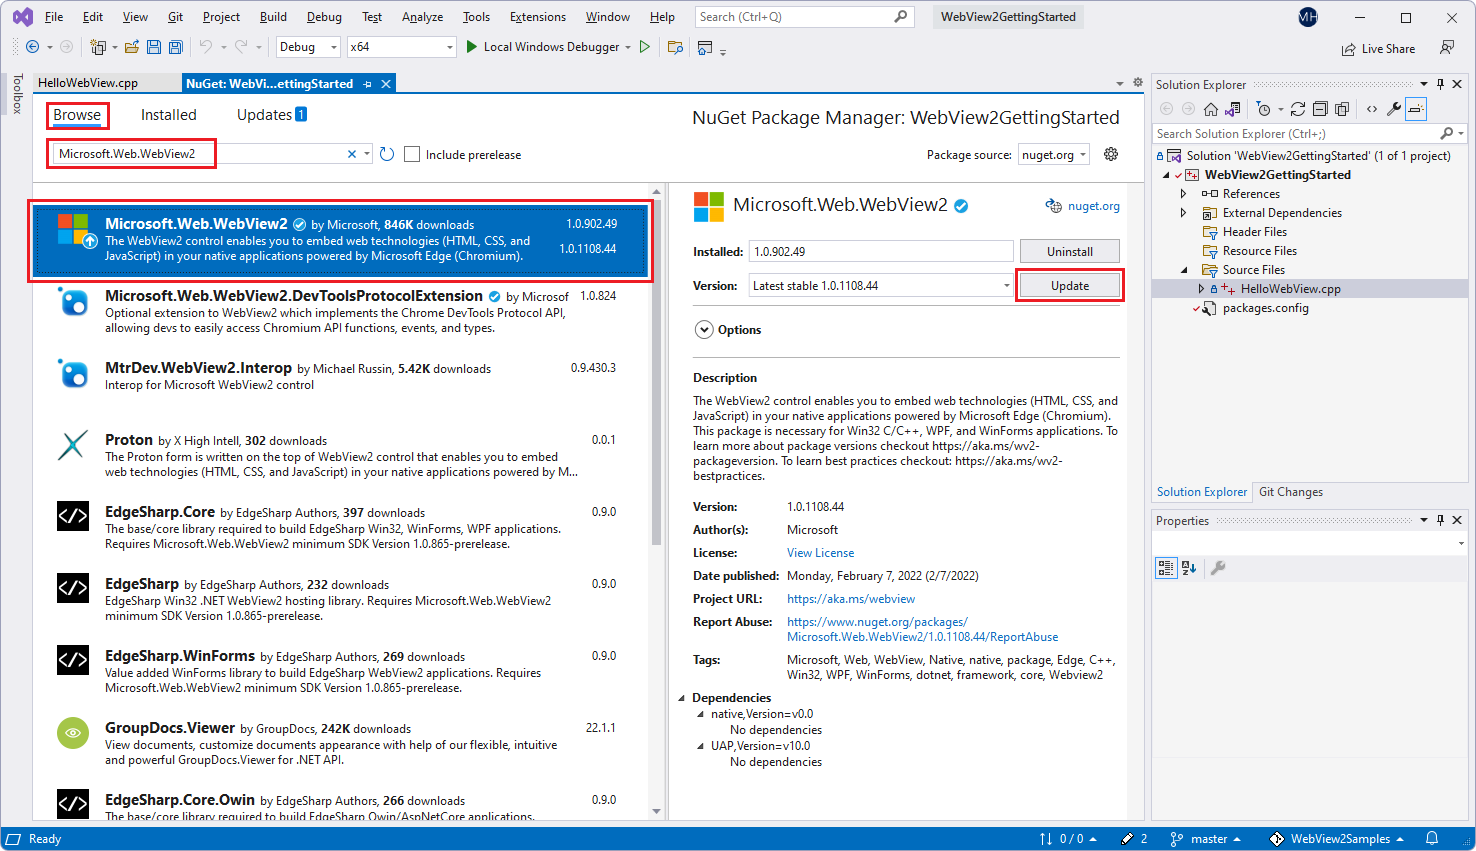 Sélection du package « Microsoft.Web.WebView2 » dans le Gestionnaire de package NuGet dans Visual Studio